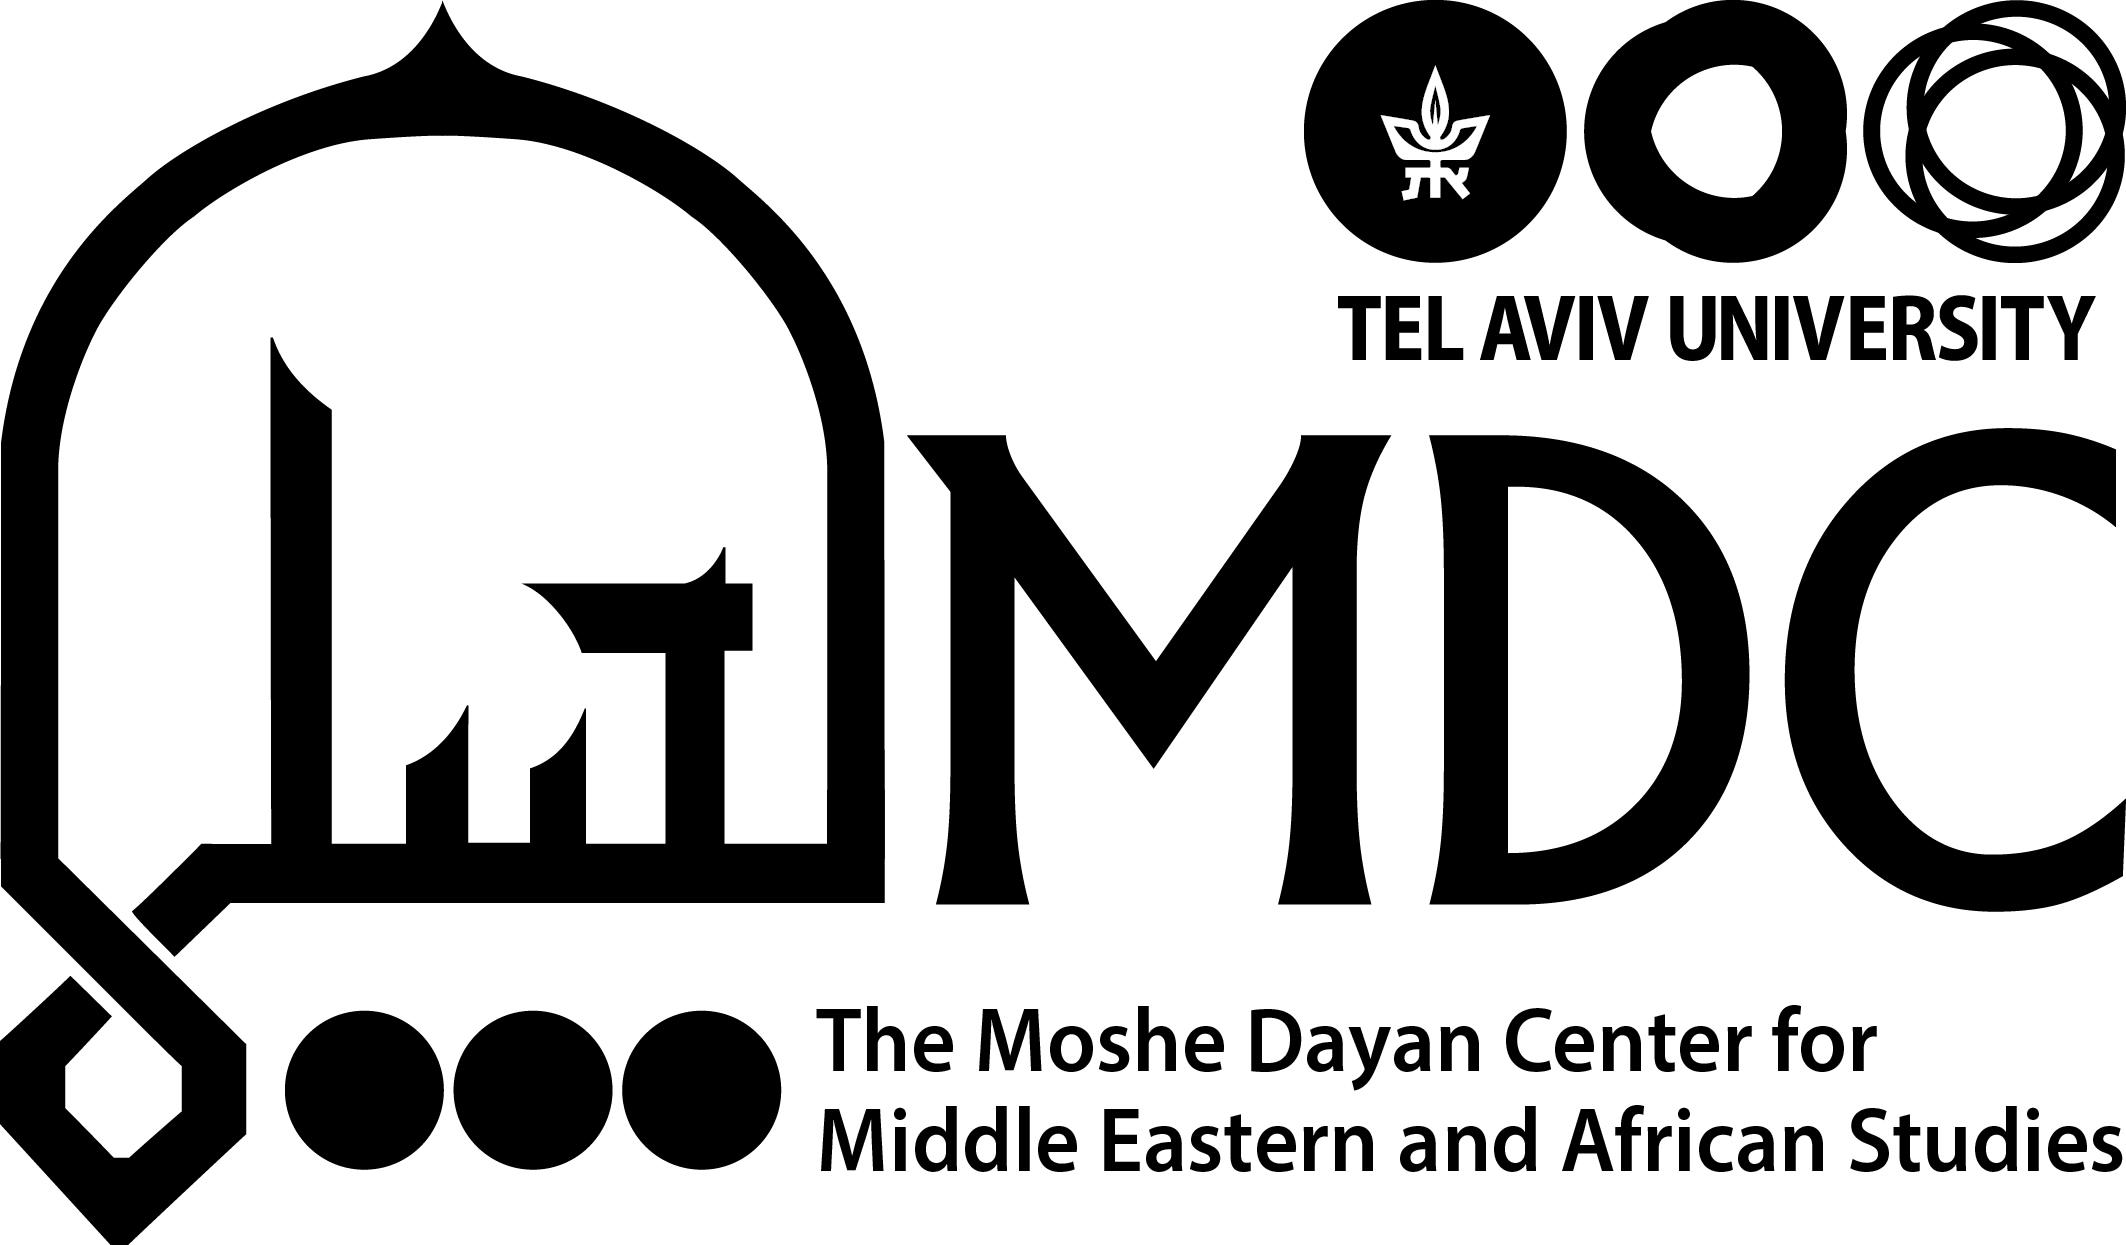 The Moshe Dayan Center at Tel-Aviv University